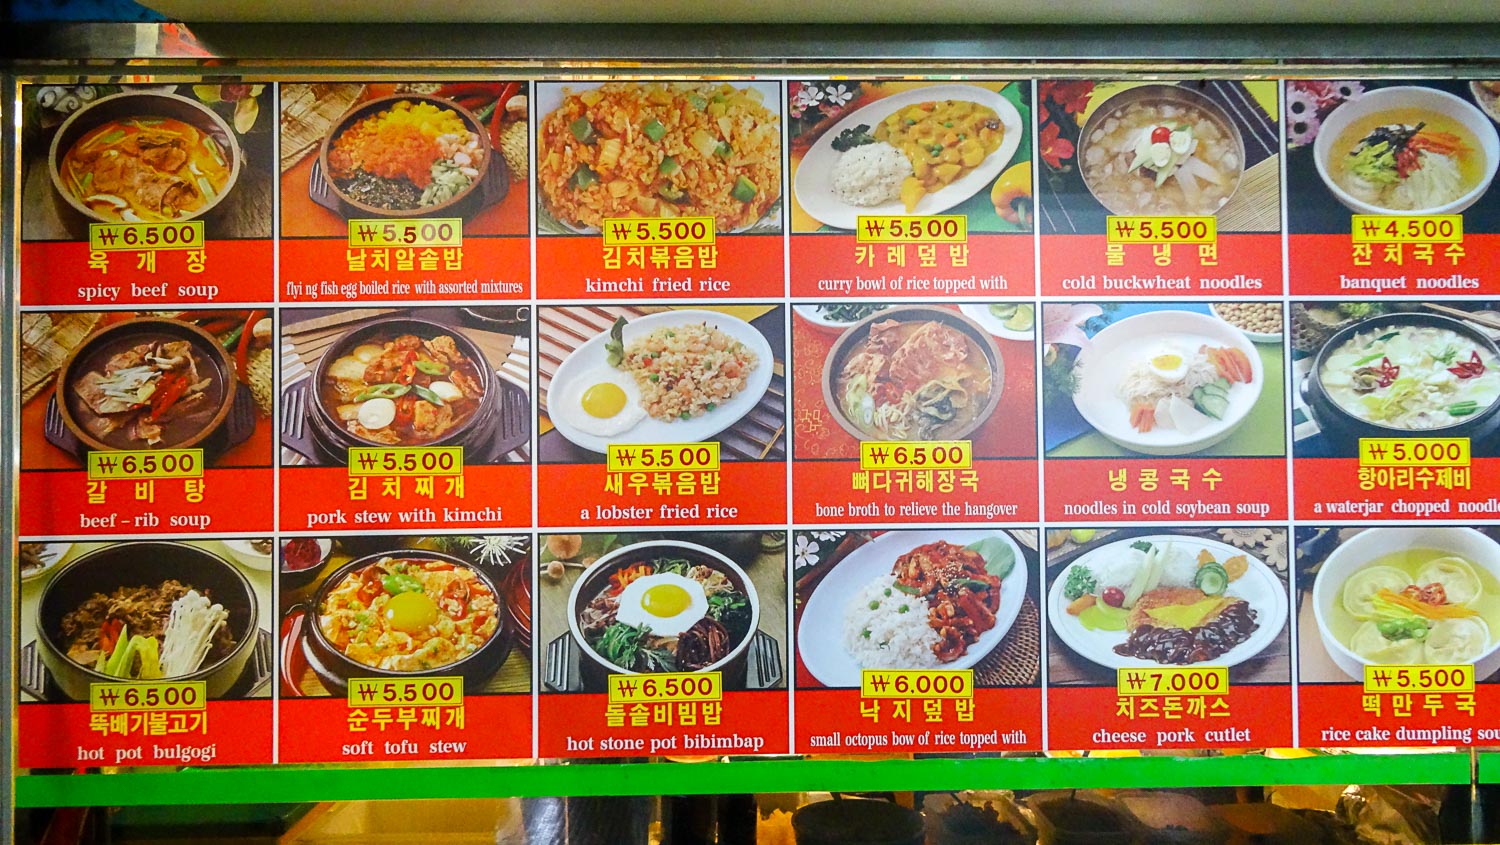 Еда в корее: традиционная кухня, перечень интересных ресторанов, отзывы туристов